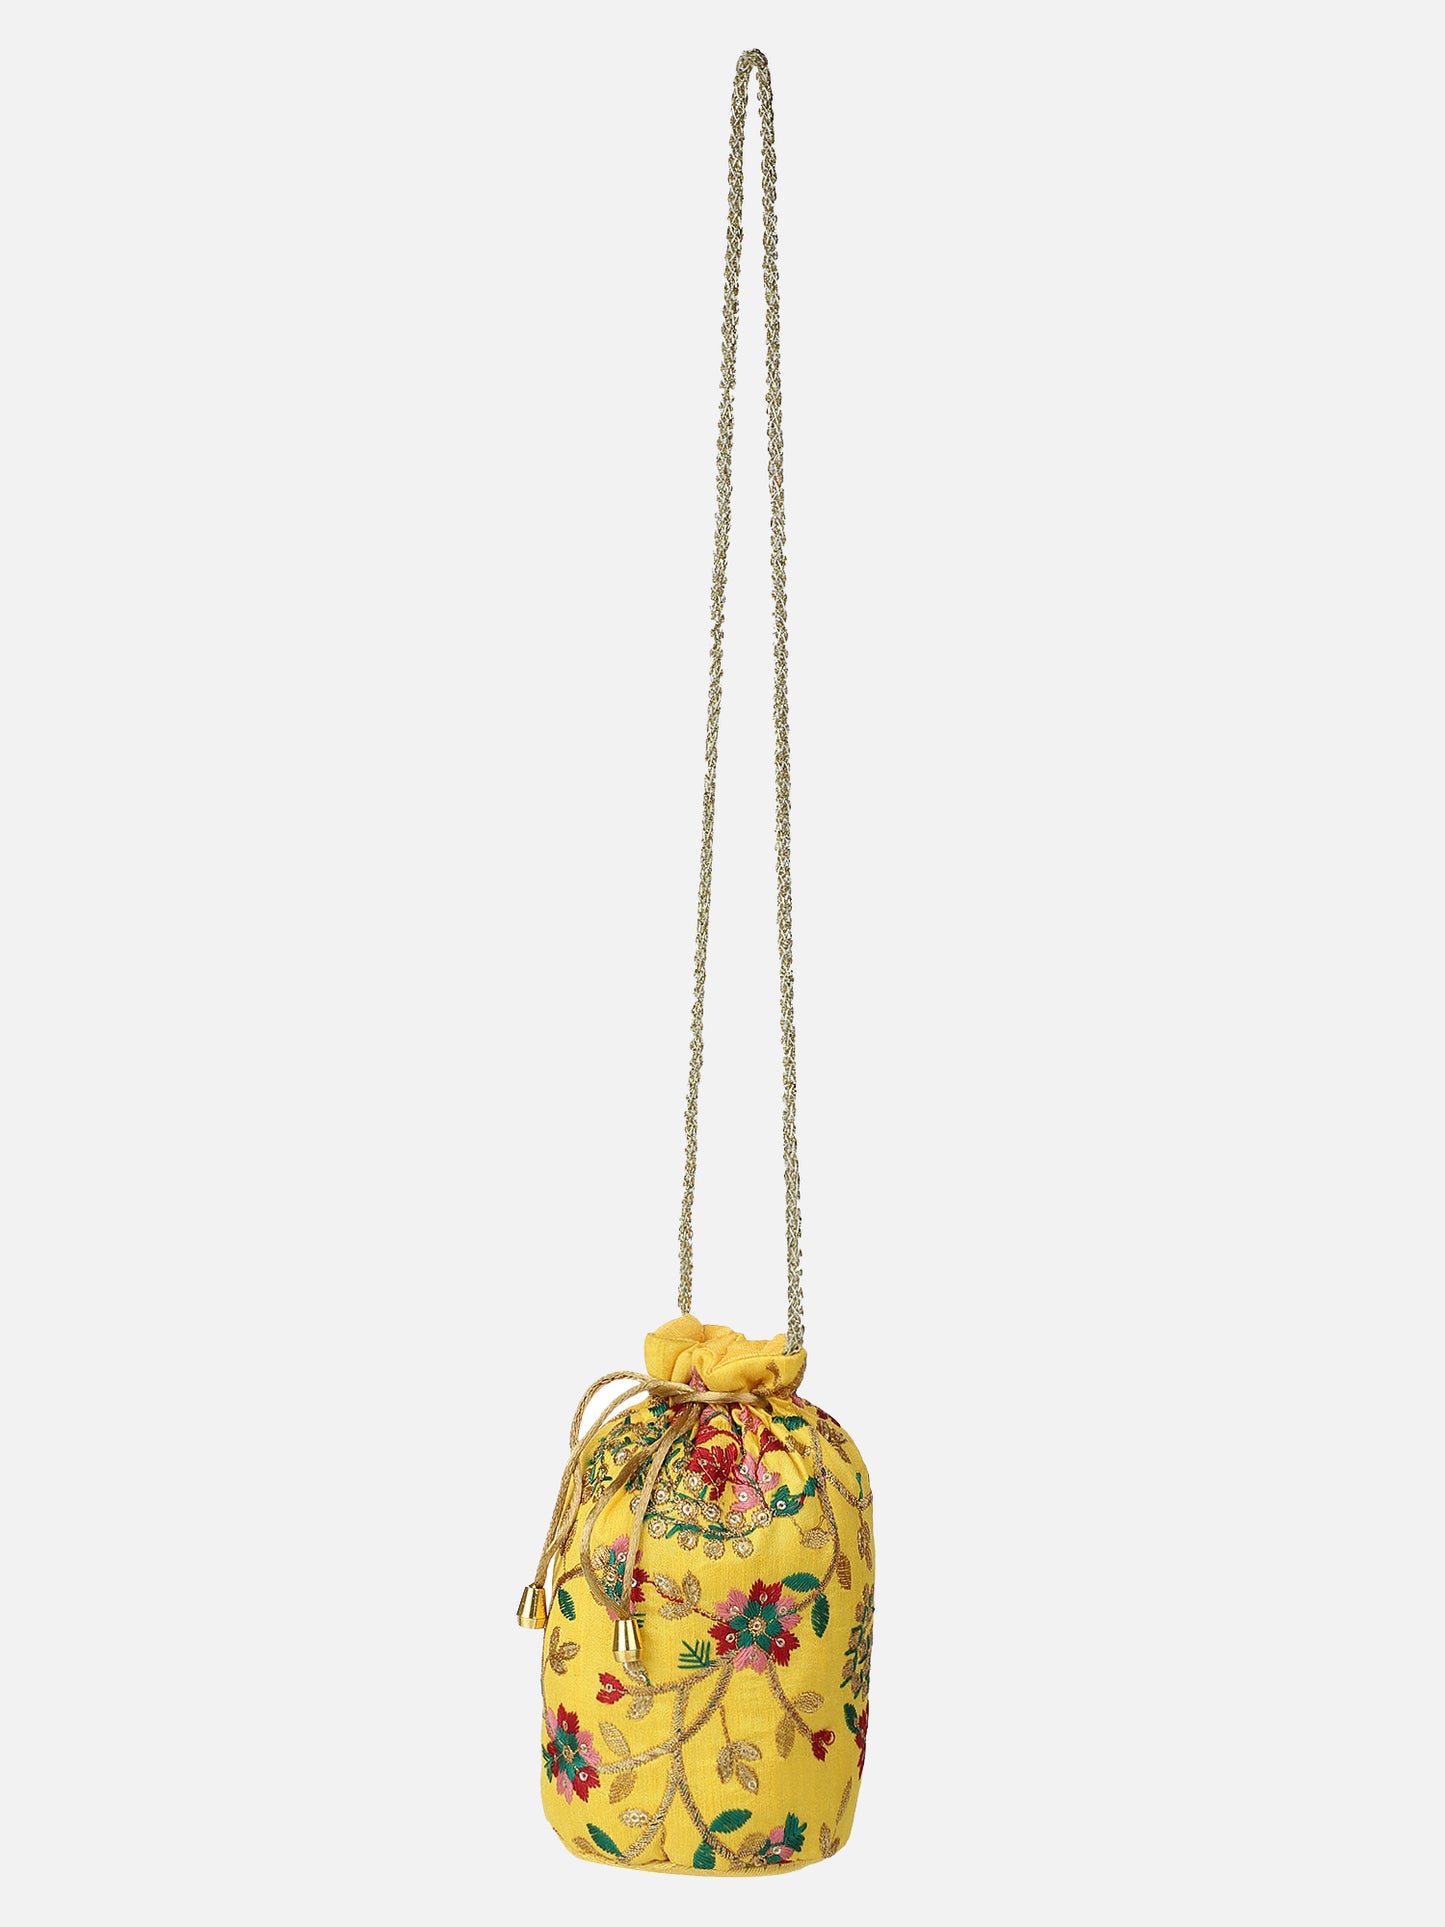 Yellow Embroidered Potli Bag